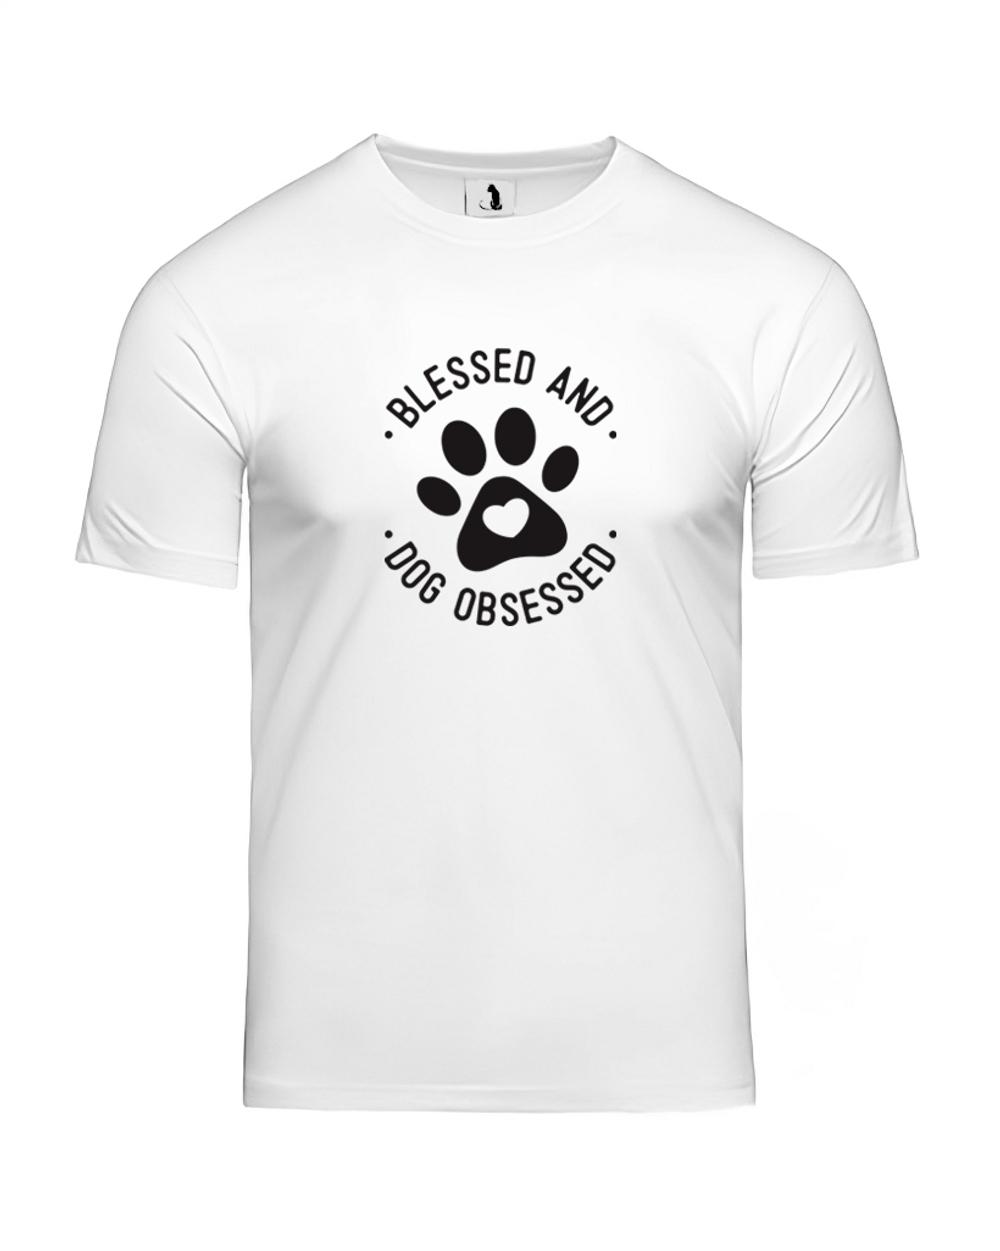 Футболка Blessed and dog obsessed unisex белая с черным рисунком